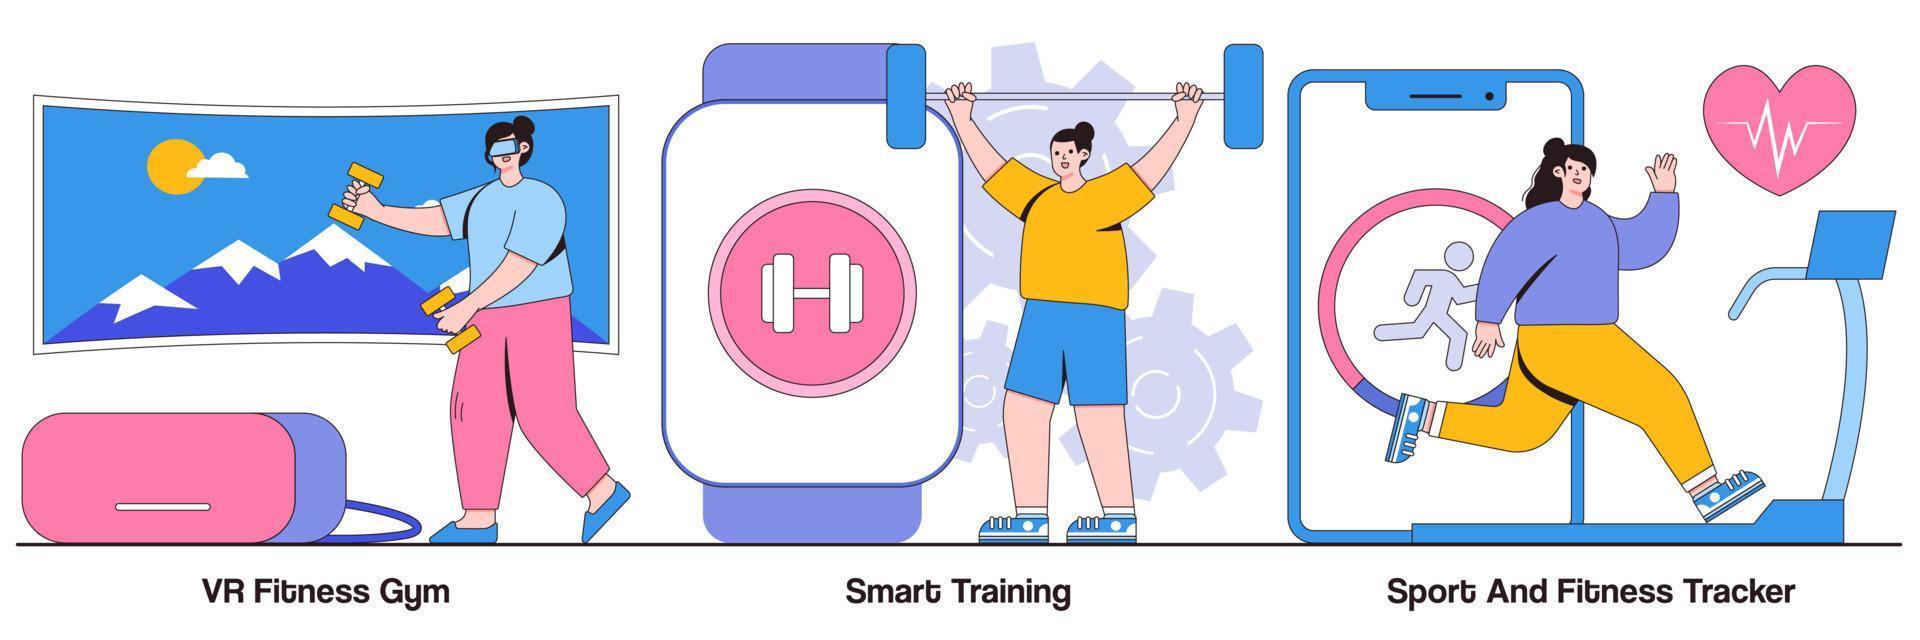 paquete ilustrado de vr gym, smart training, sport y fitness tracker vector